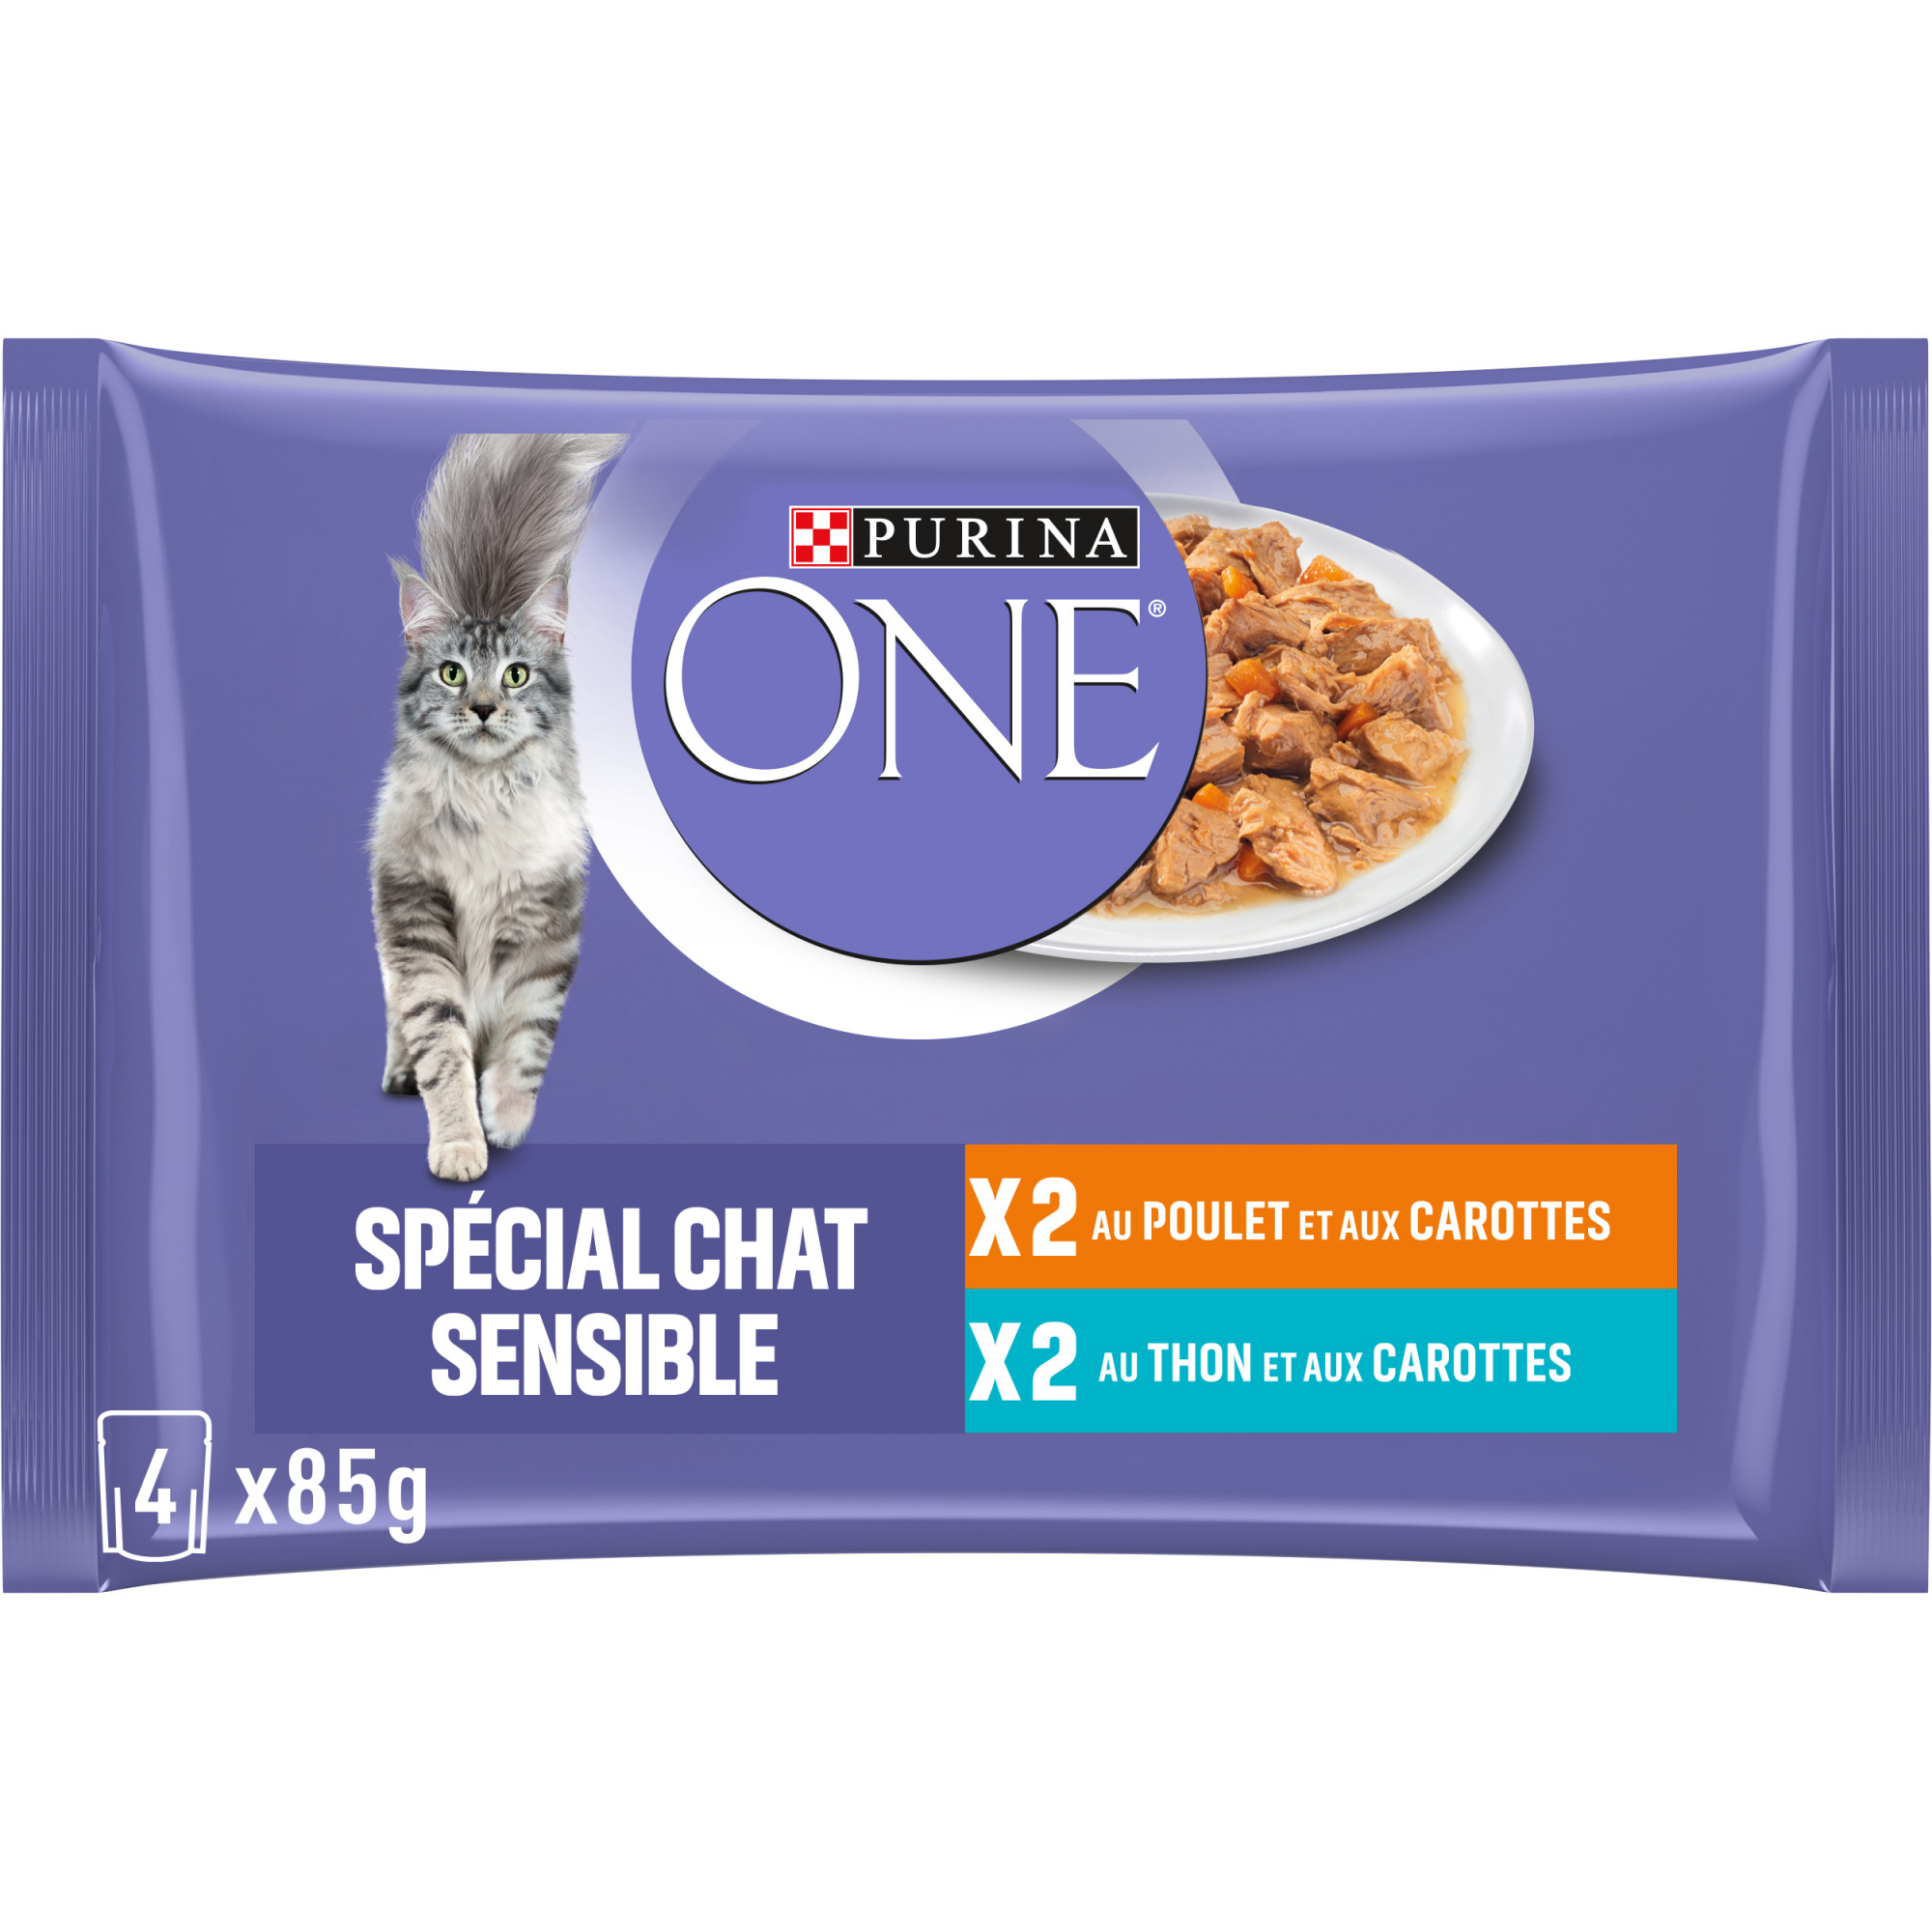 PURINA ONE gato sensível - 2 sabores